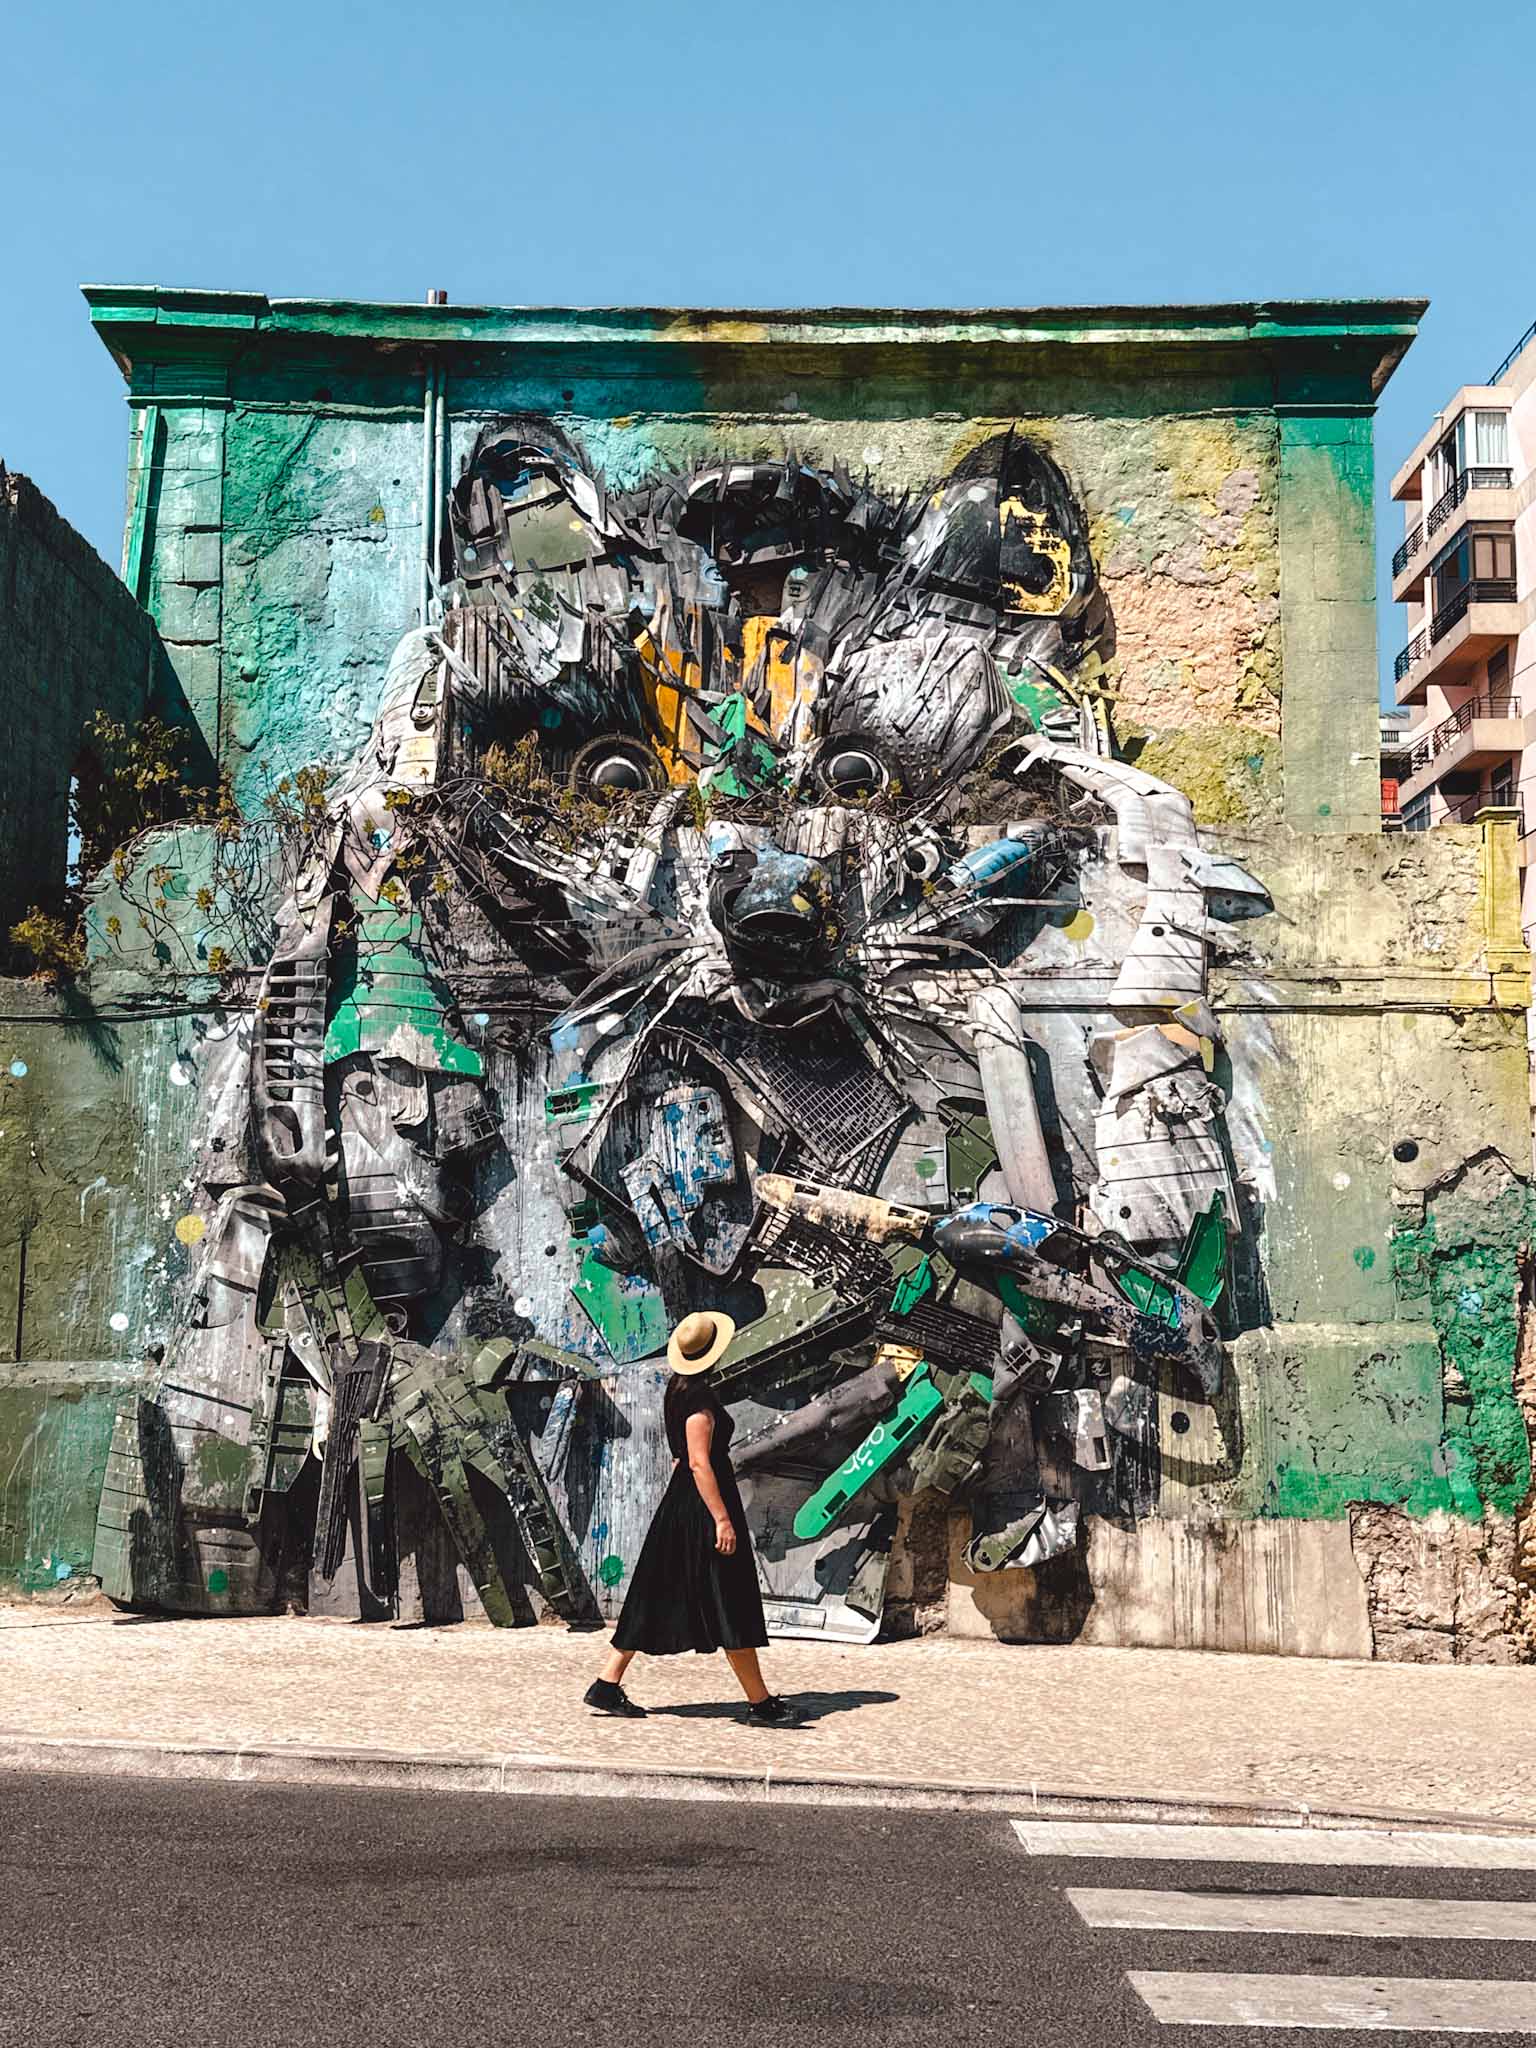 Best Instagram photo spots in Lisbon, Portugal - Street Art by Bordalo II - Raccoon